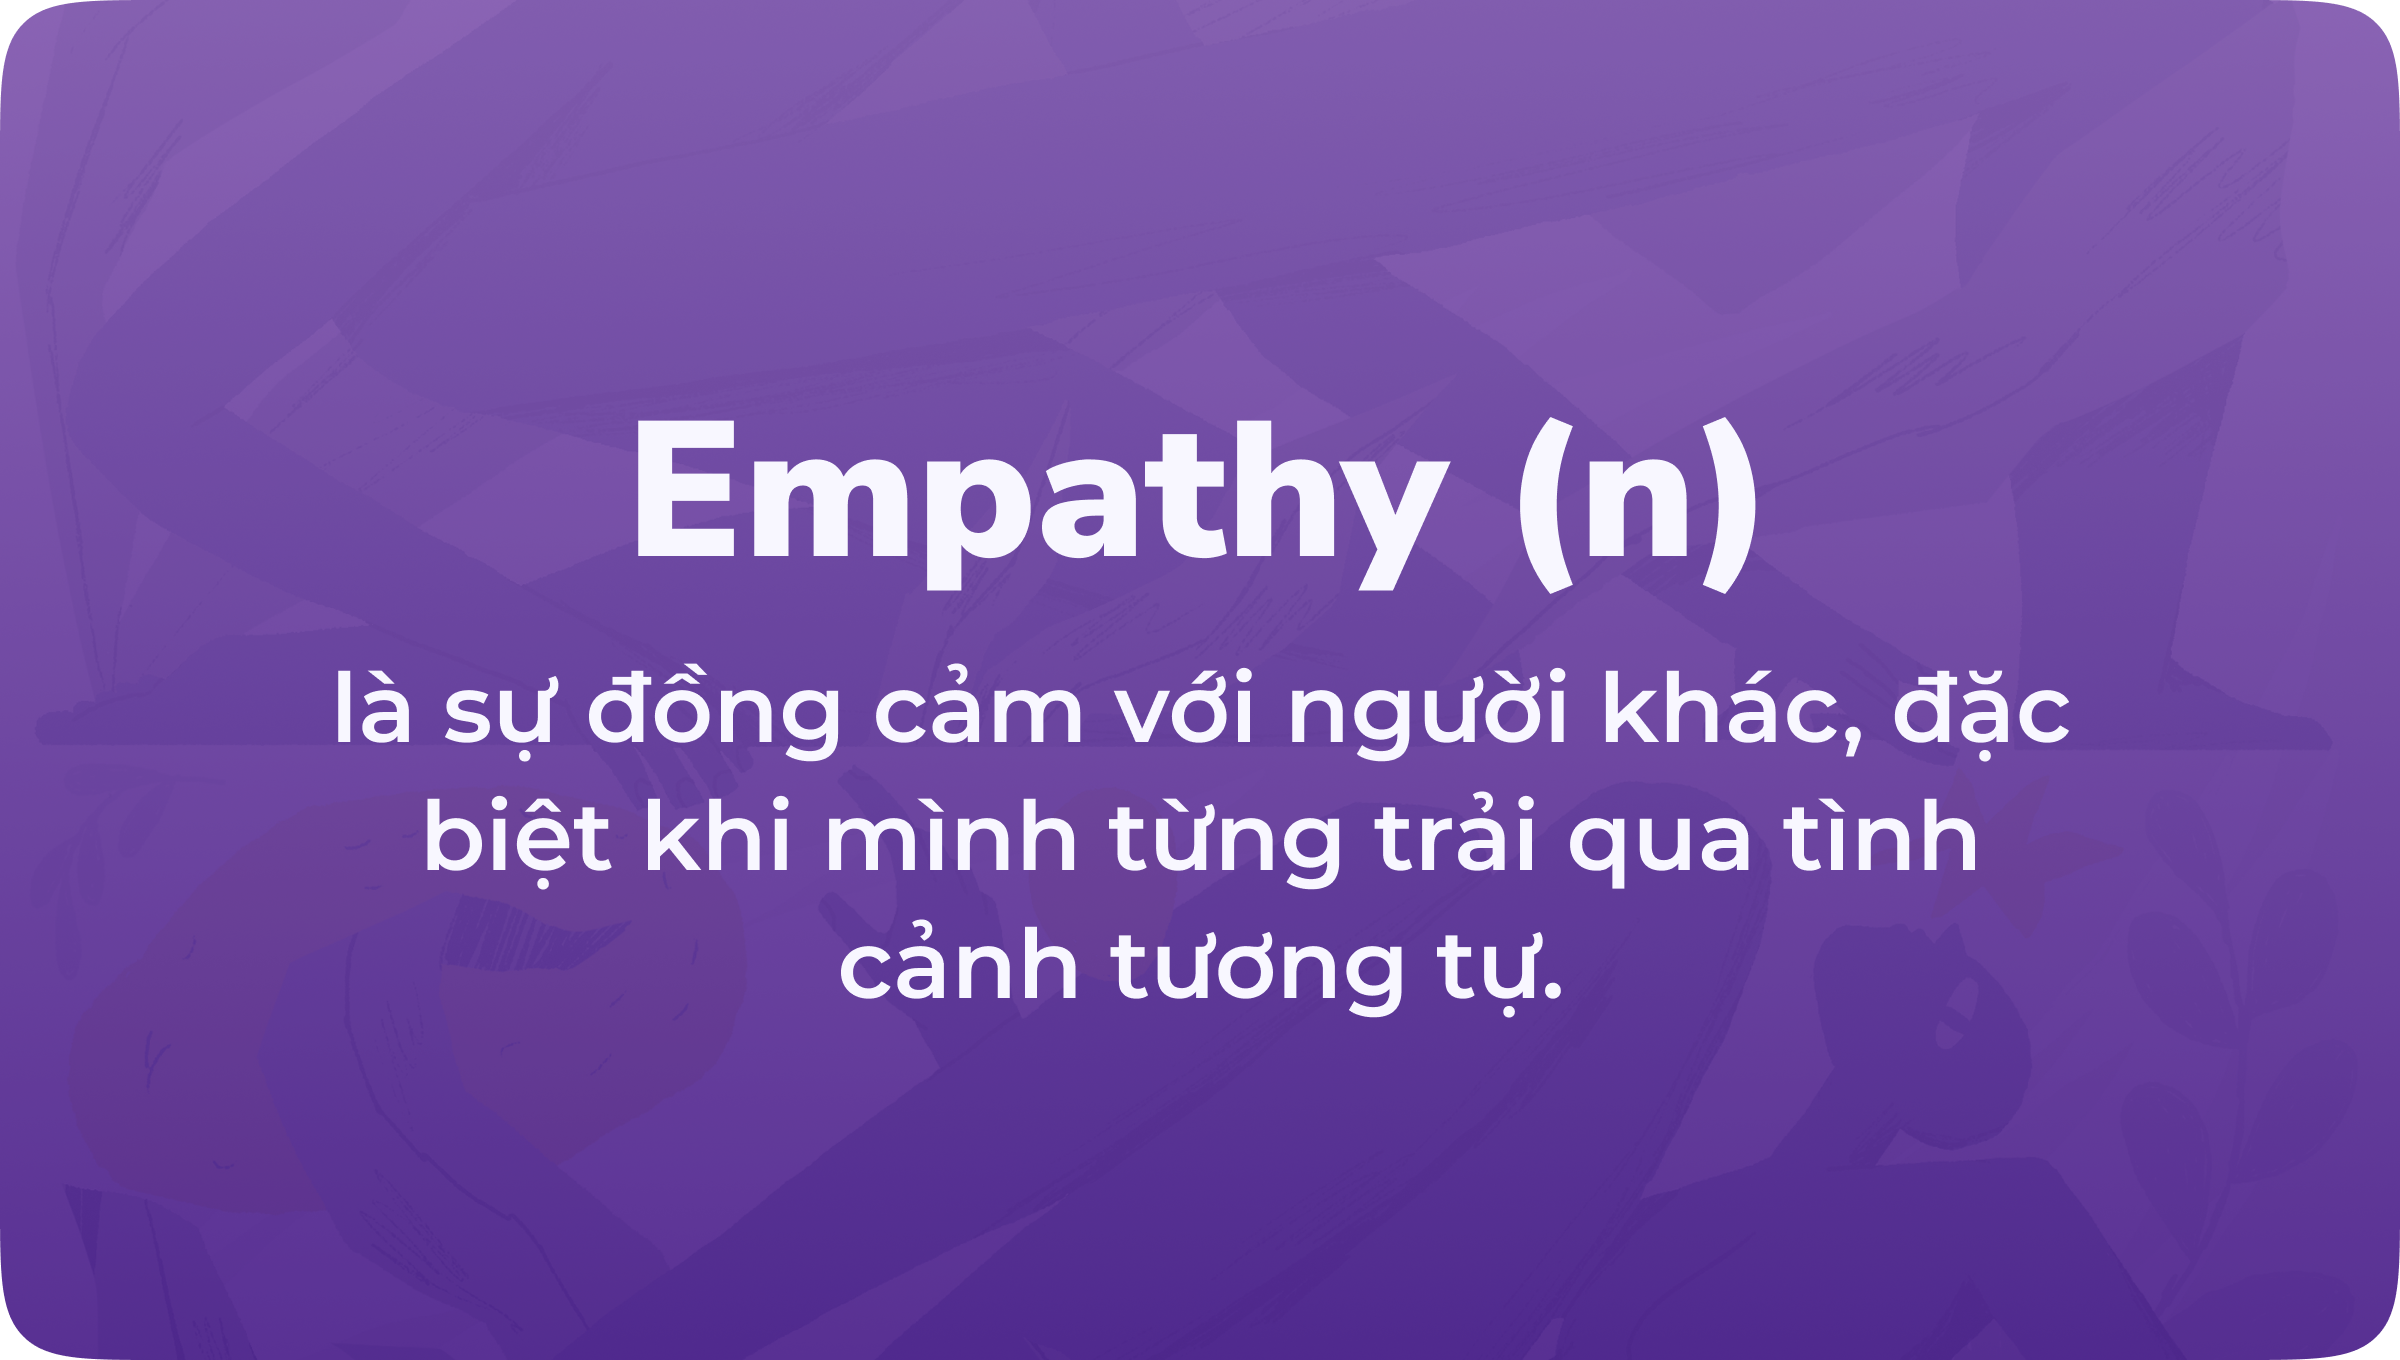 Empathy là gì và tại sao một sản phẩm lại cần nó đến thế? – iDesign